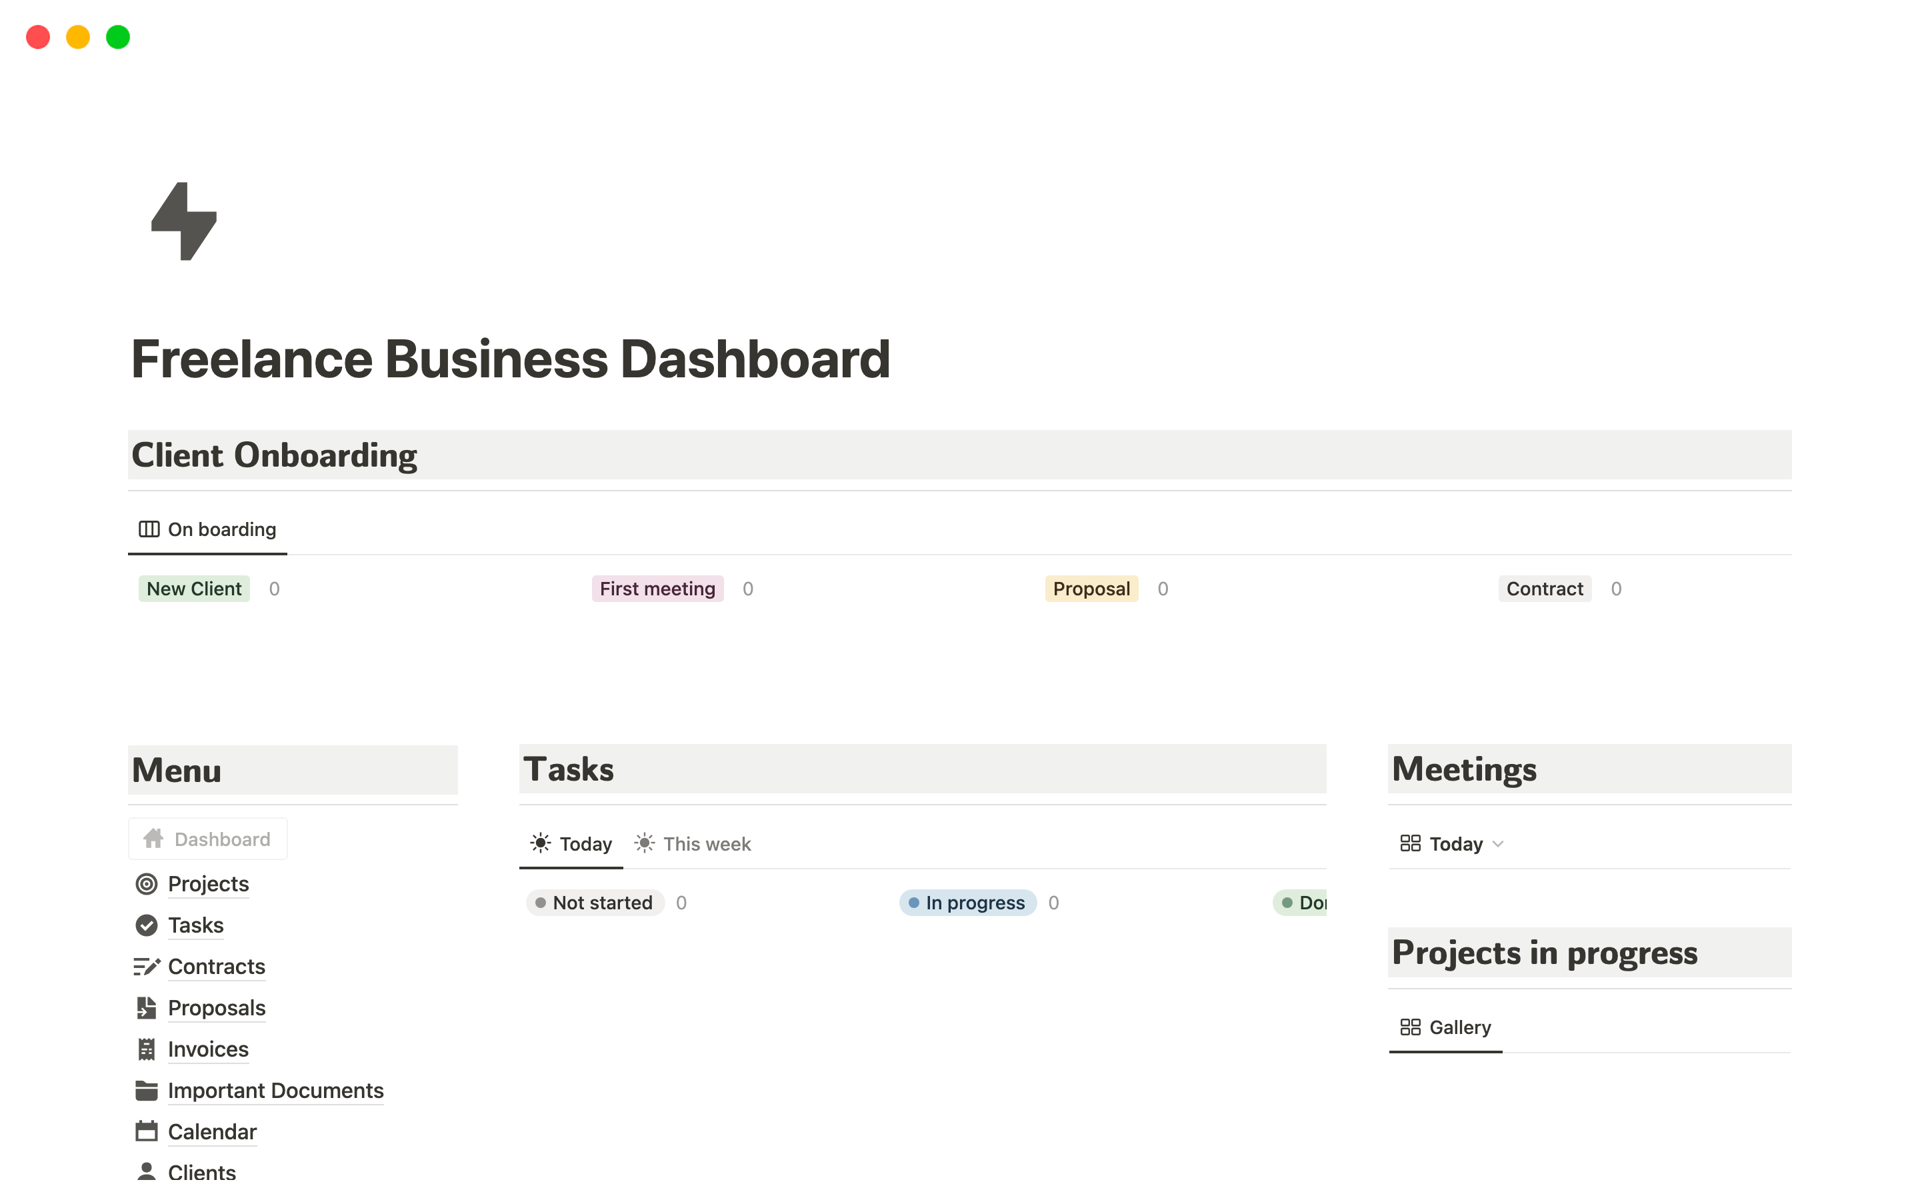 Vista previa de una plantilla para Freelance Business Dashboard